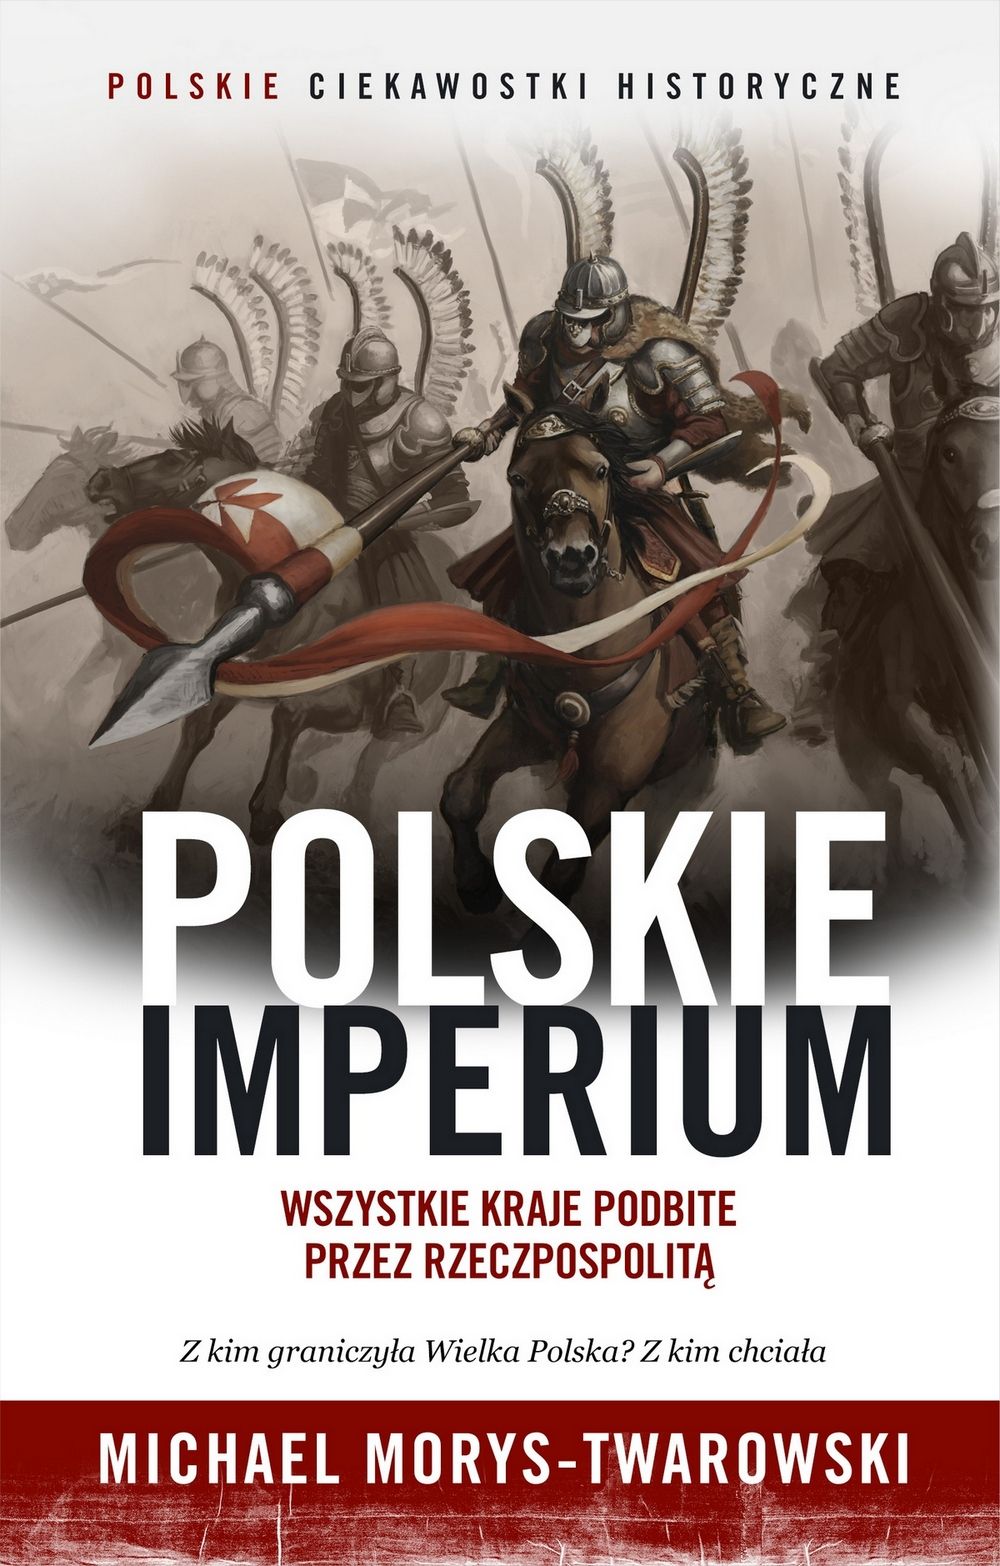 Artykuł powstał w oparciu o materiały zebranie w tracie pisania książki "Polskie Imperium. Wszystkie kraje podbite przez Rzeczpospolitą". Jest to najnowsza publikacja wydaną pod marką „Ciekawostek historycznych”.